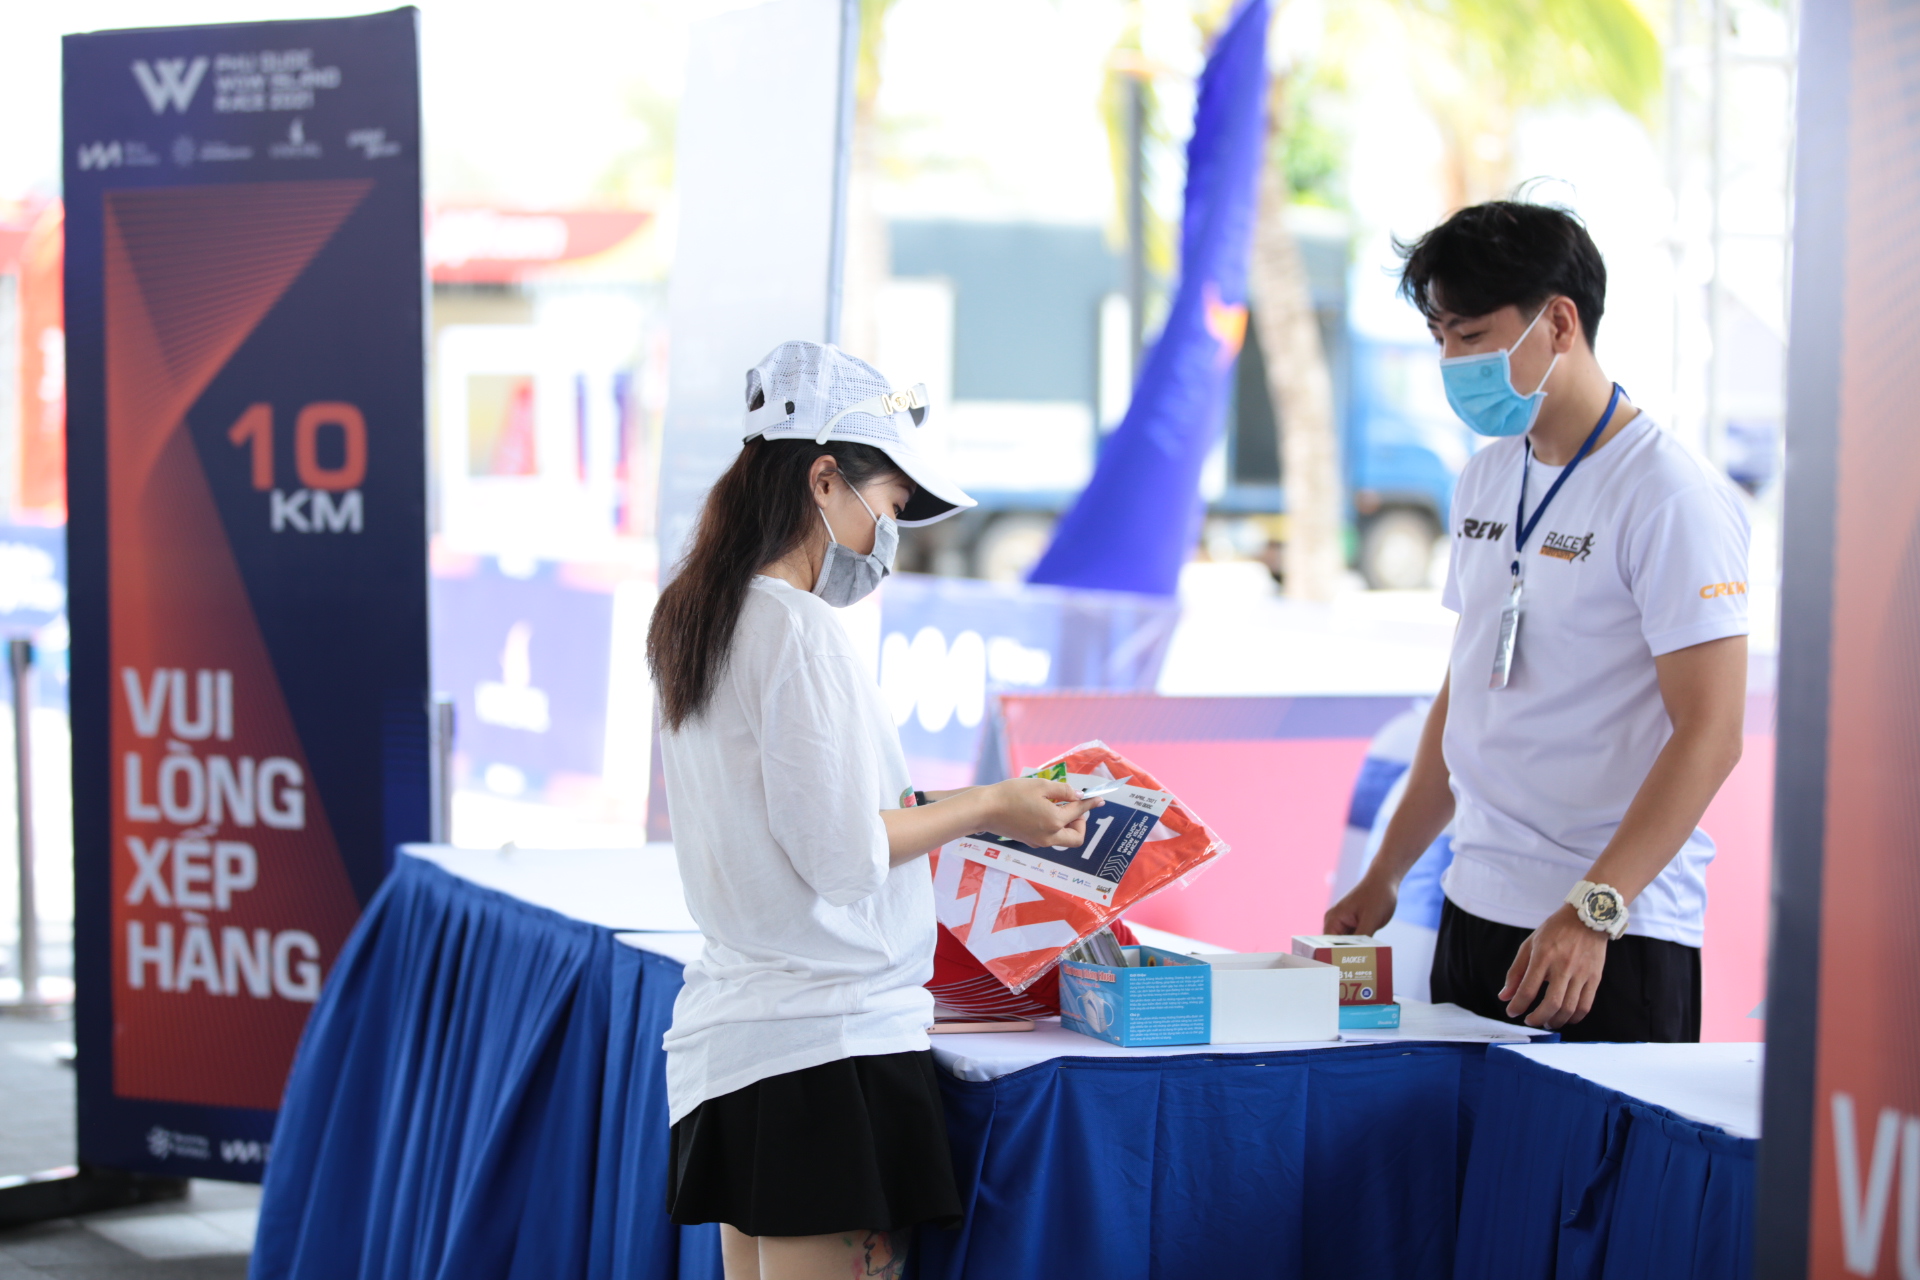 Giải chạy Phú Quốc WOW Island Race 2021 khởi động với hơn 2000 vận động viên tham dự - Ảnh 2.